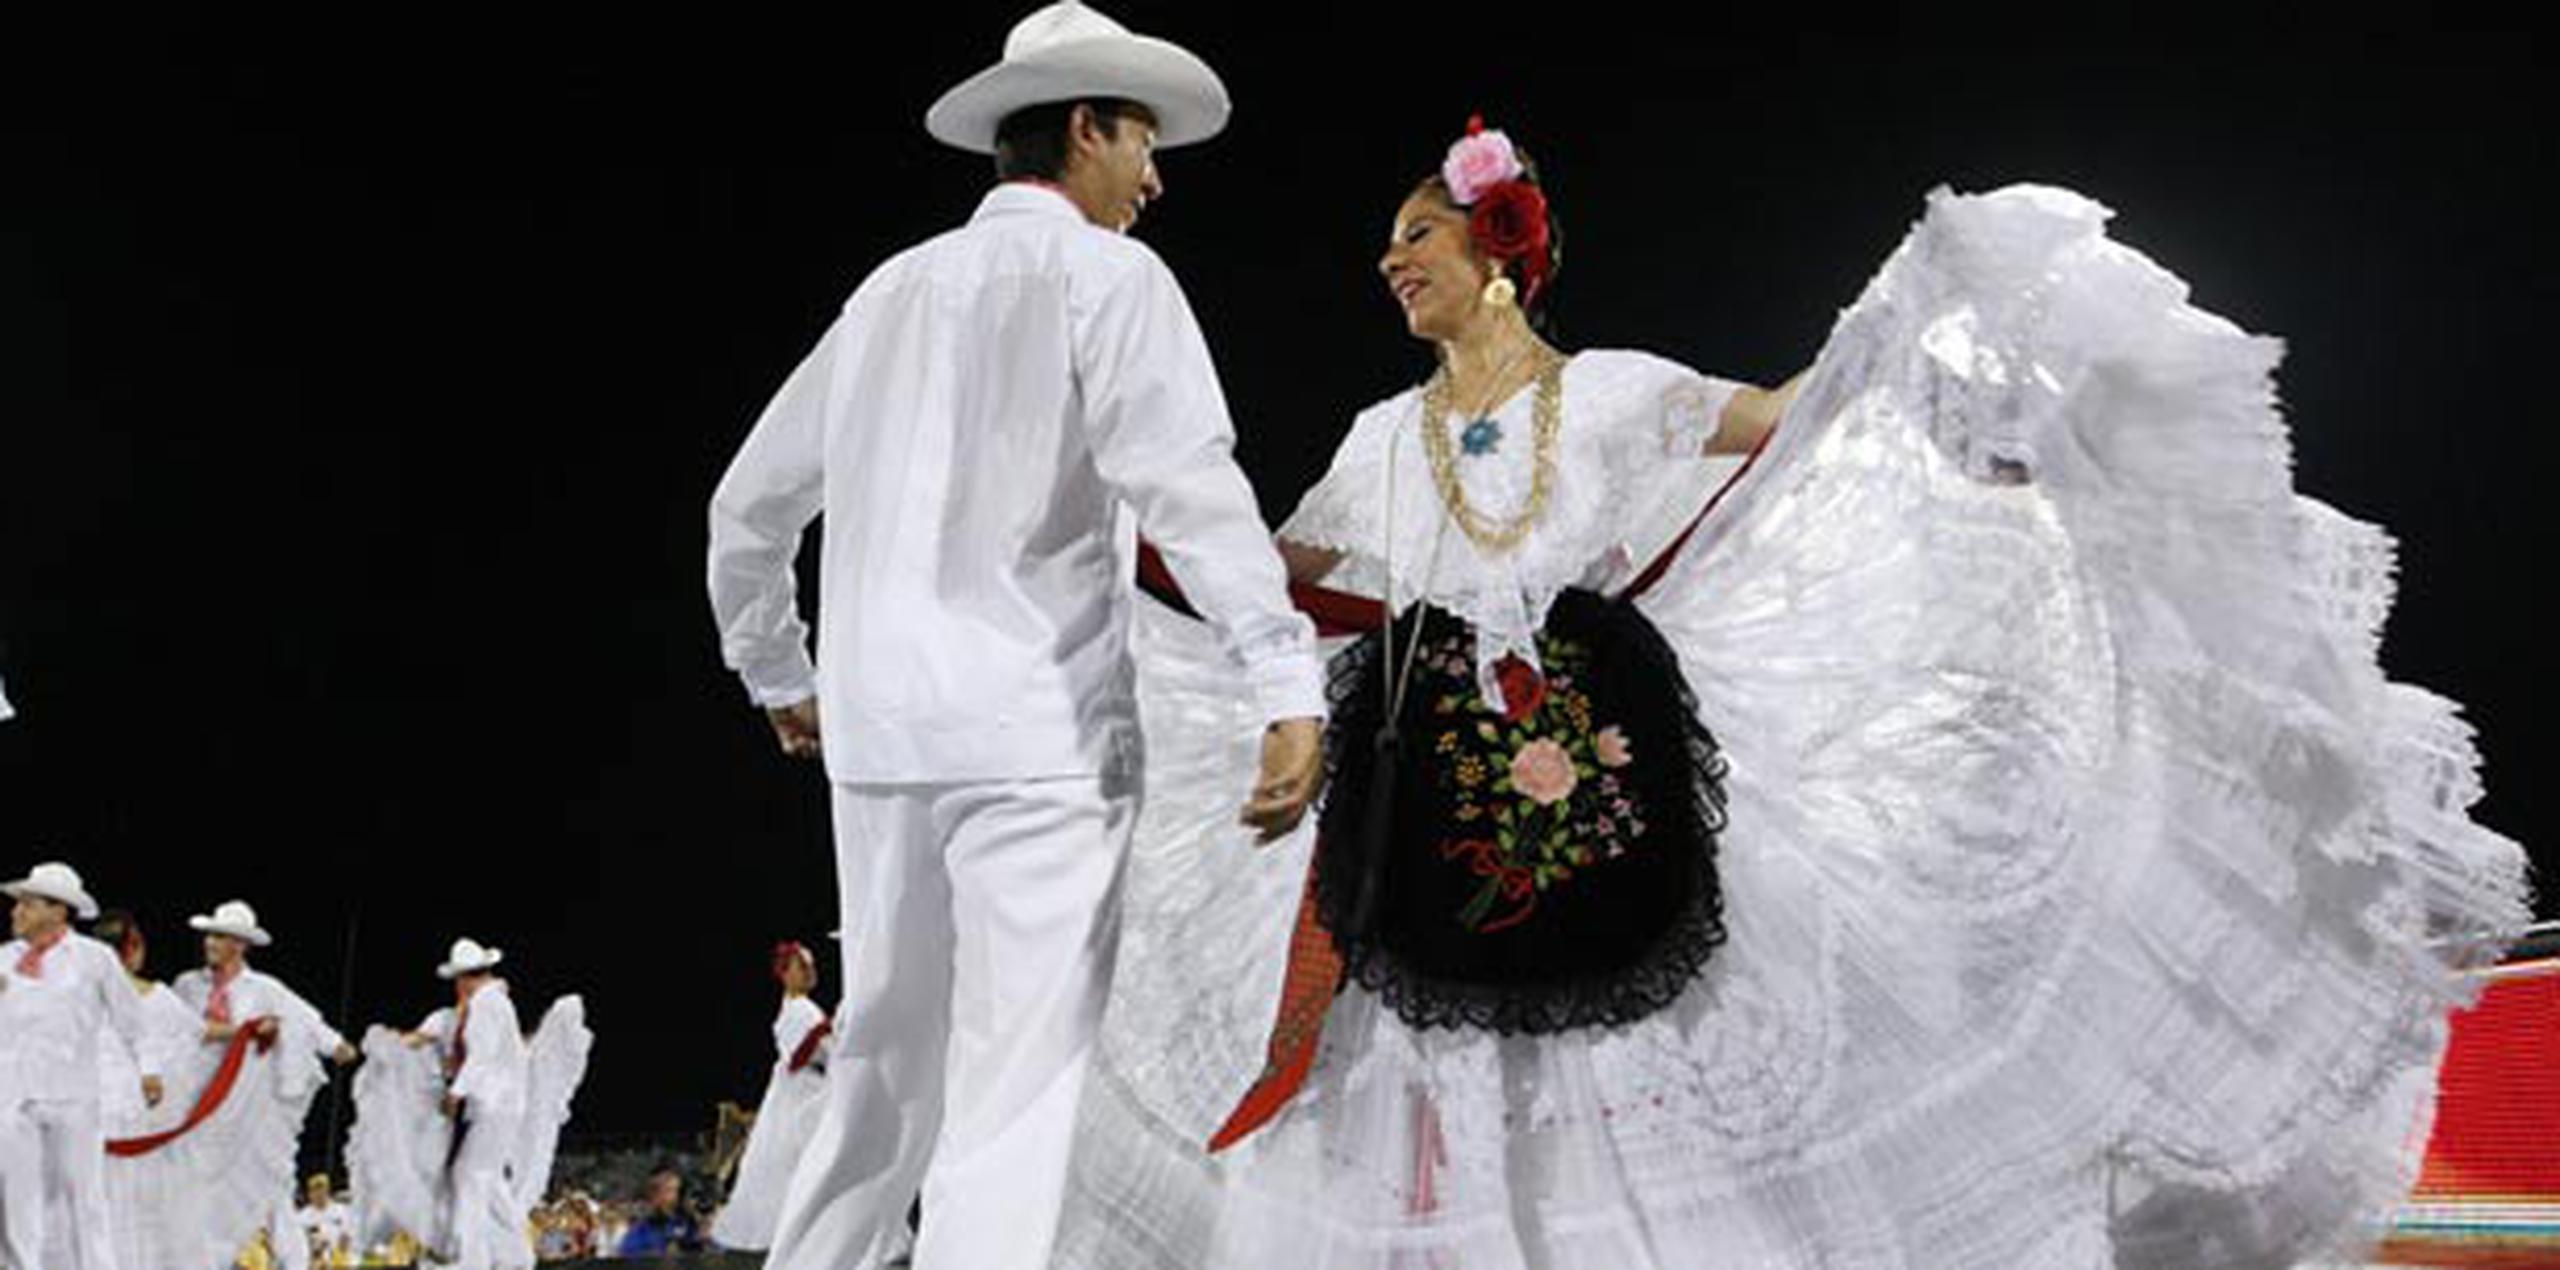 La ciudad de Veracruz recibió la batuta de Mayagüez 2010. En la foto, bailarines veracruzanos forman parte de la ceremonia de clausura en la Sultana del Oeste. (Archivo)